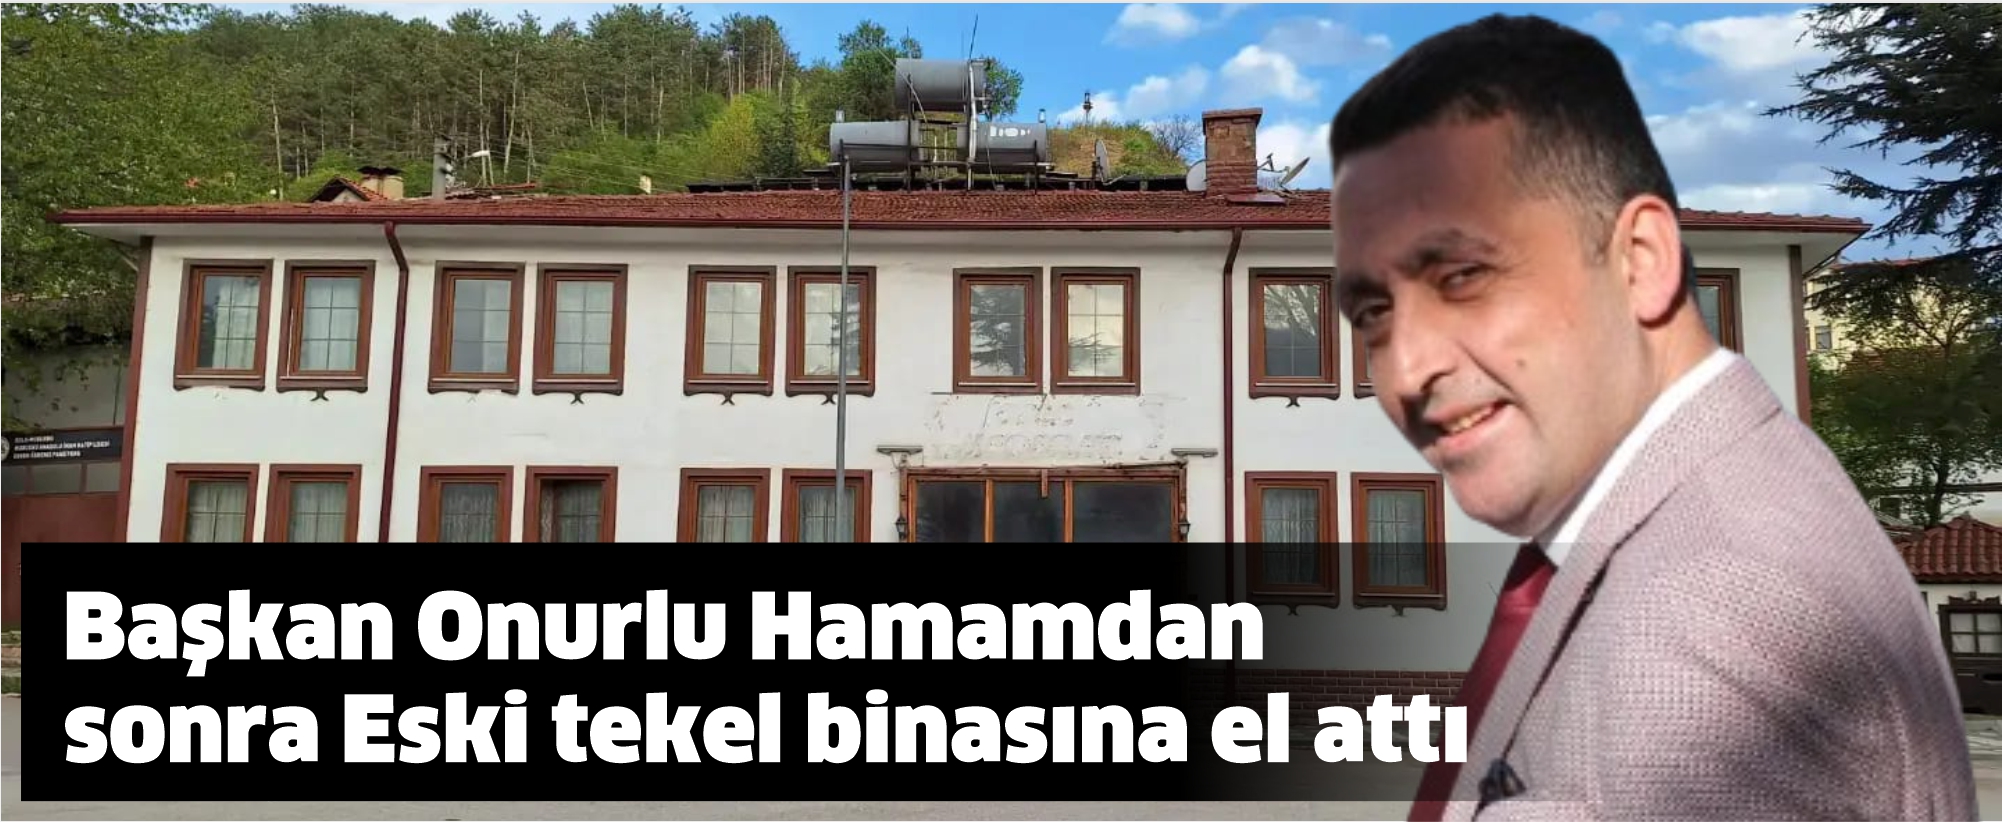 Başkan Onurlu Hamamdan sonra tekel binasına el attı